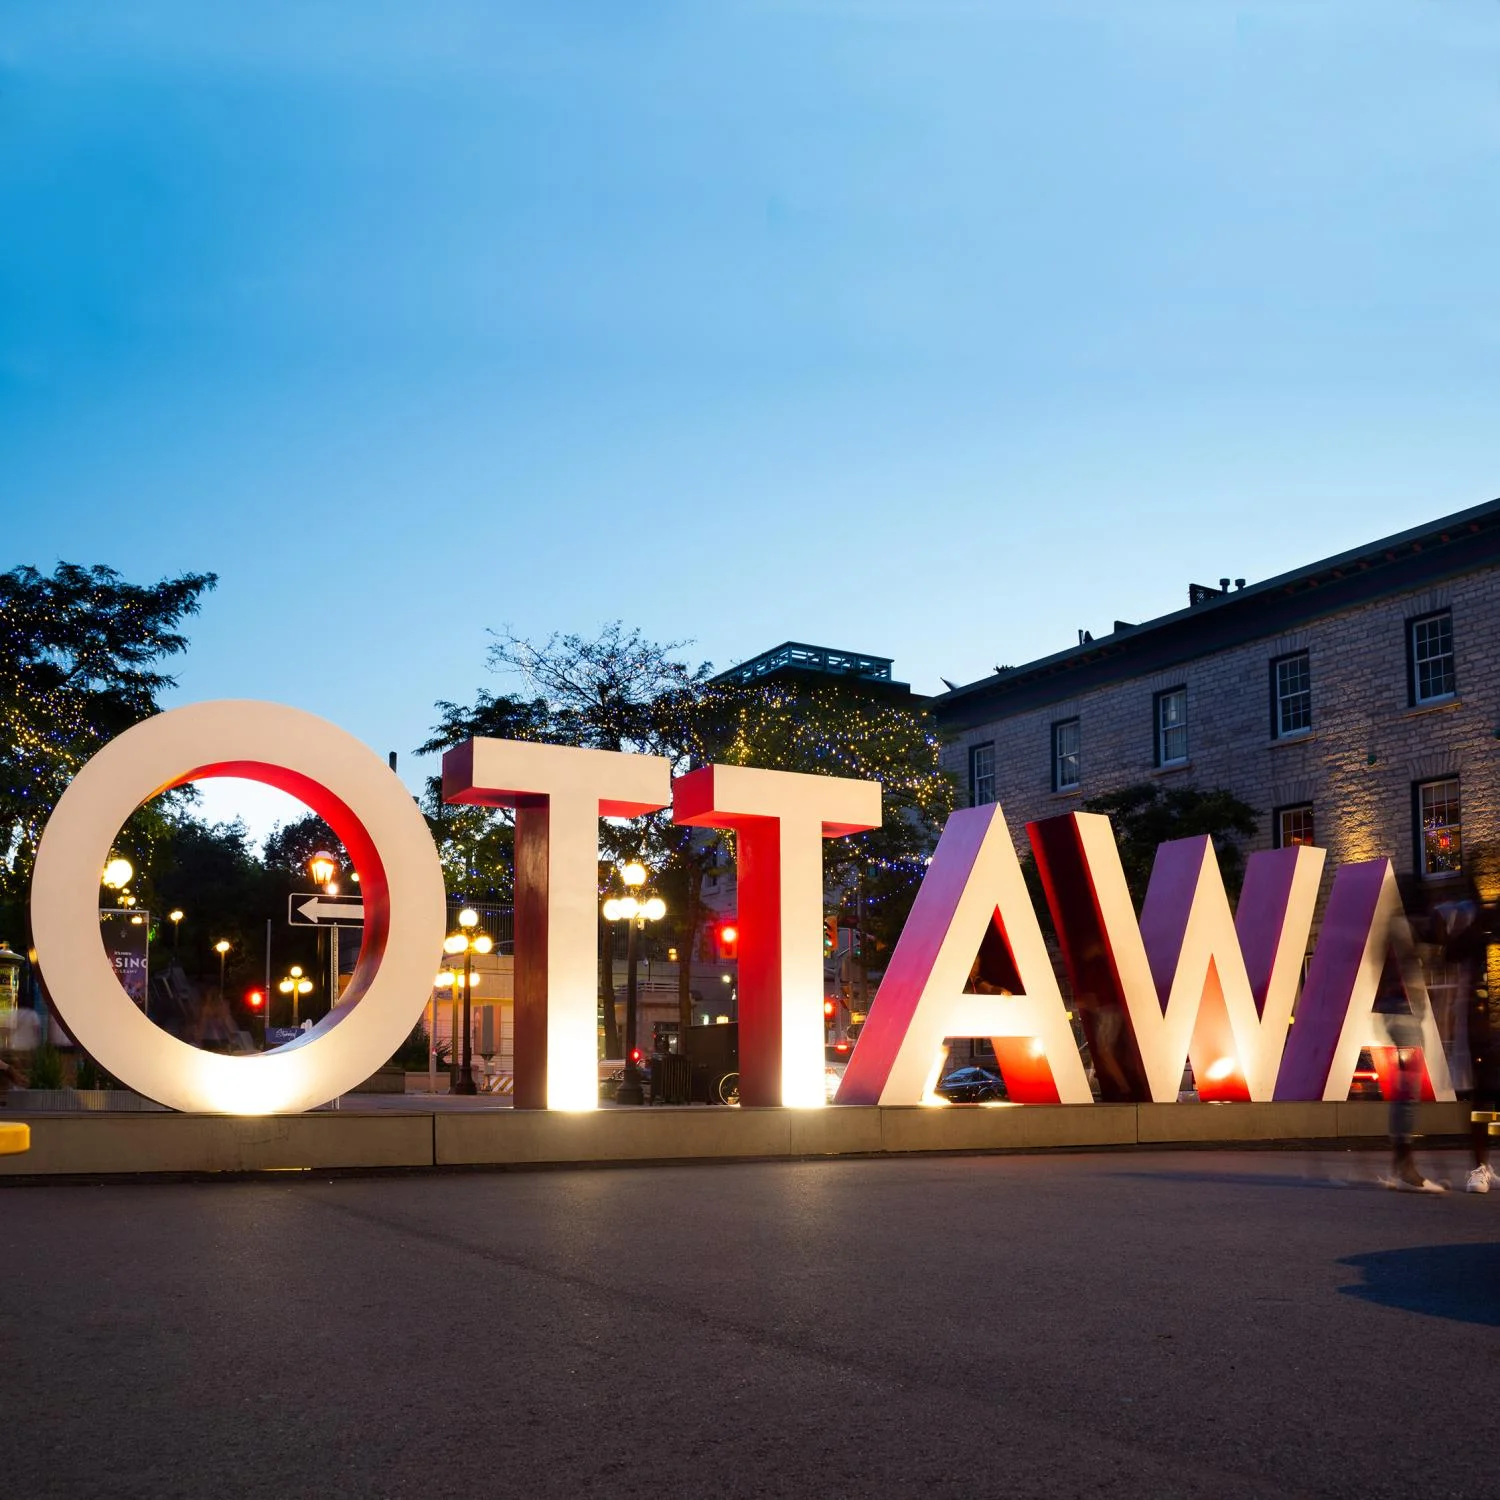 "Ottawa" sign